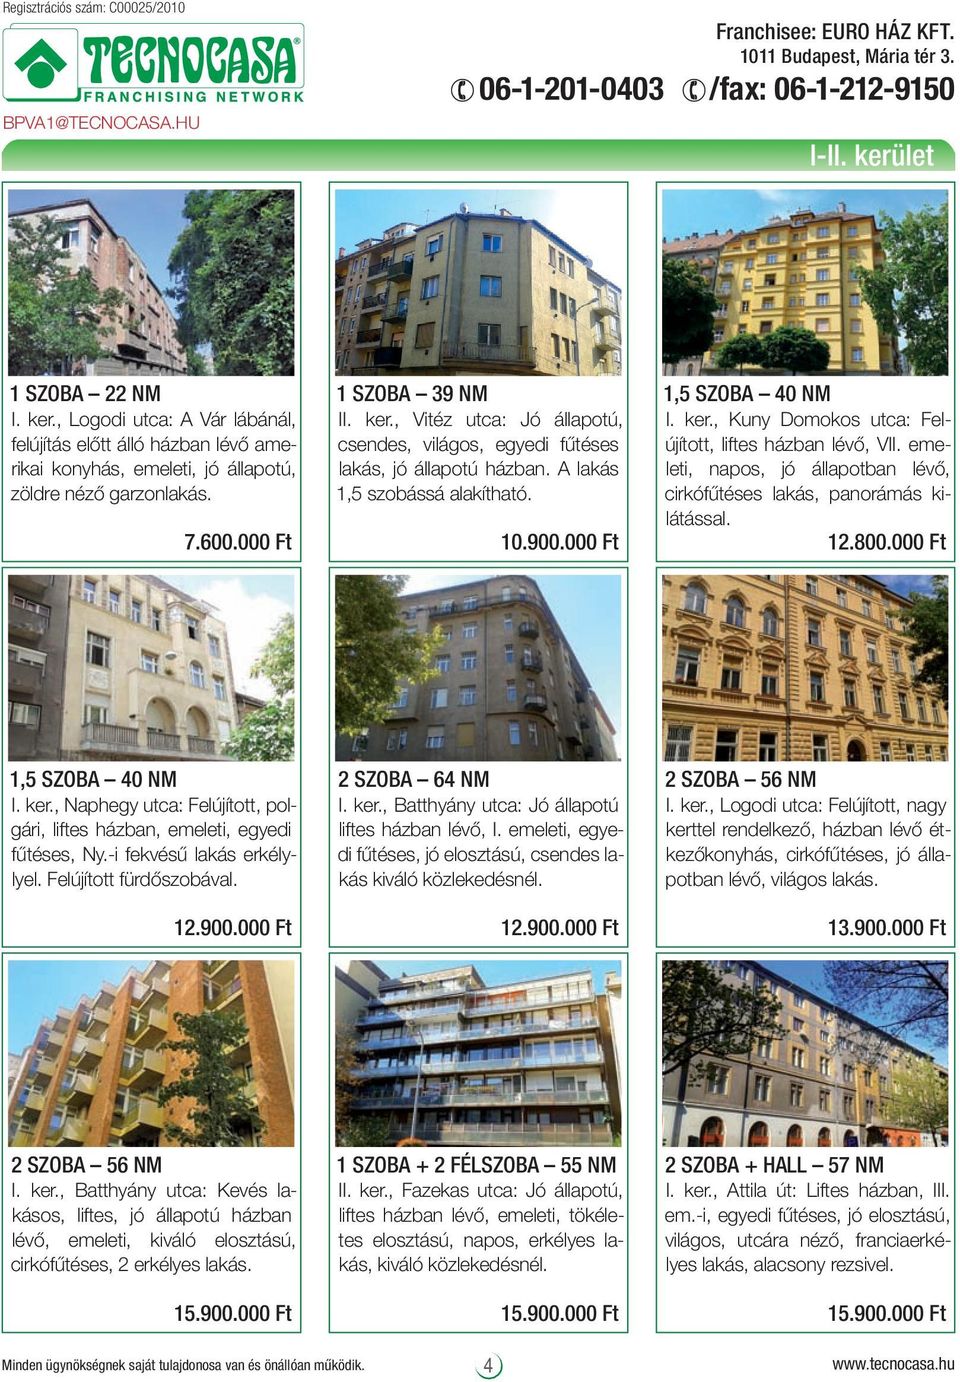 A lakás 1,5 szobássá alakítható. 10.900.000 Ft 1,5 SZOBA 40 NM I. ker., Kuny Domokos utca: Felújított, liftes házban lévő, VII.